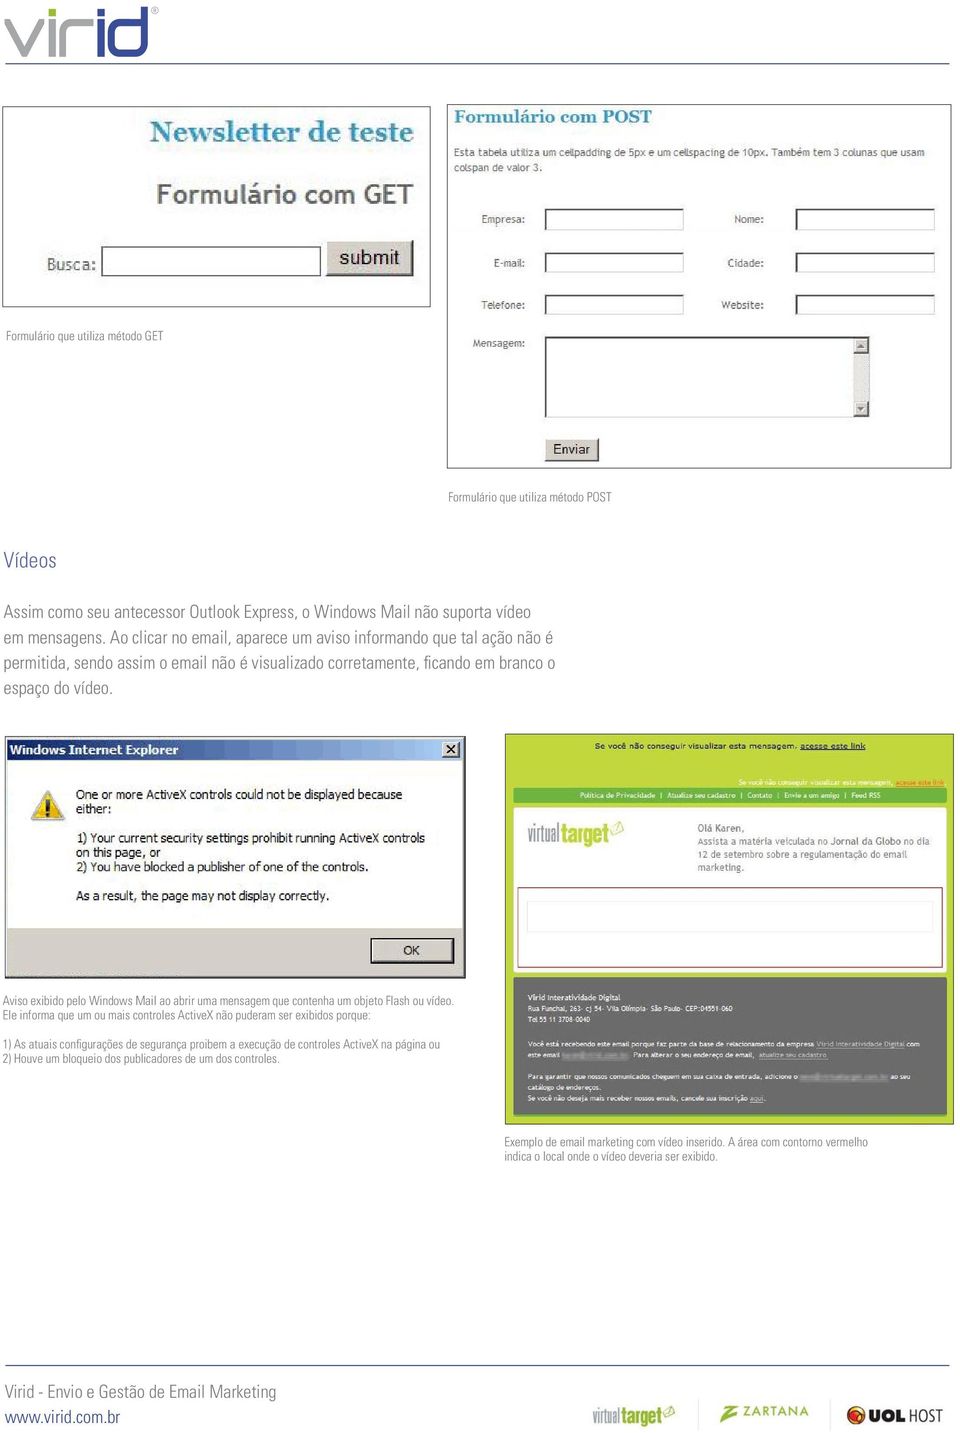 Aviso exibido pelo Windows Mail ao abrir uma mensagem que contenha um objeto Flash ou vídeo.